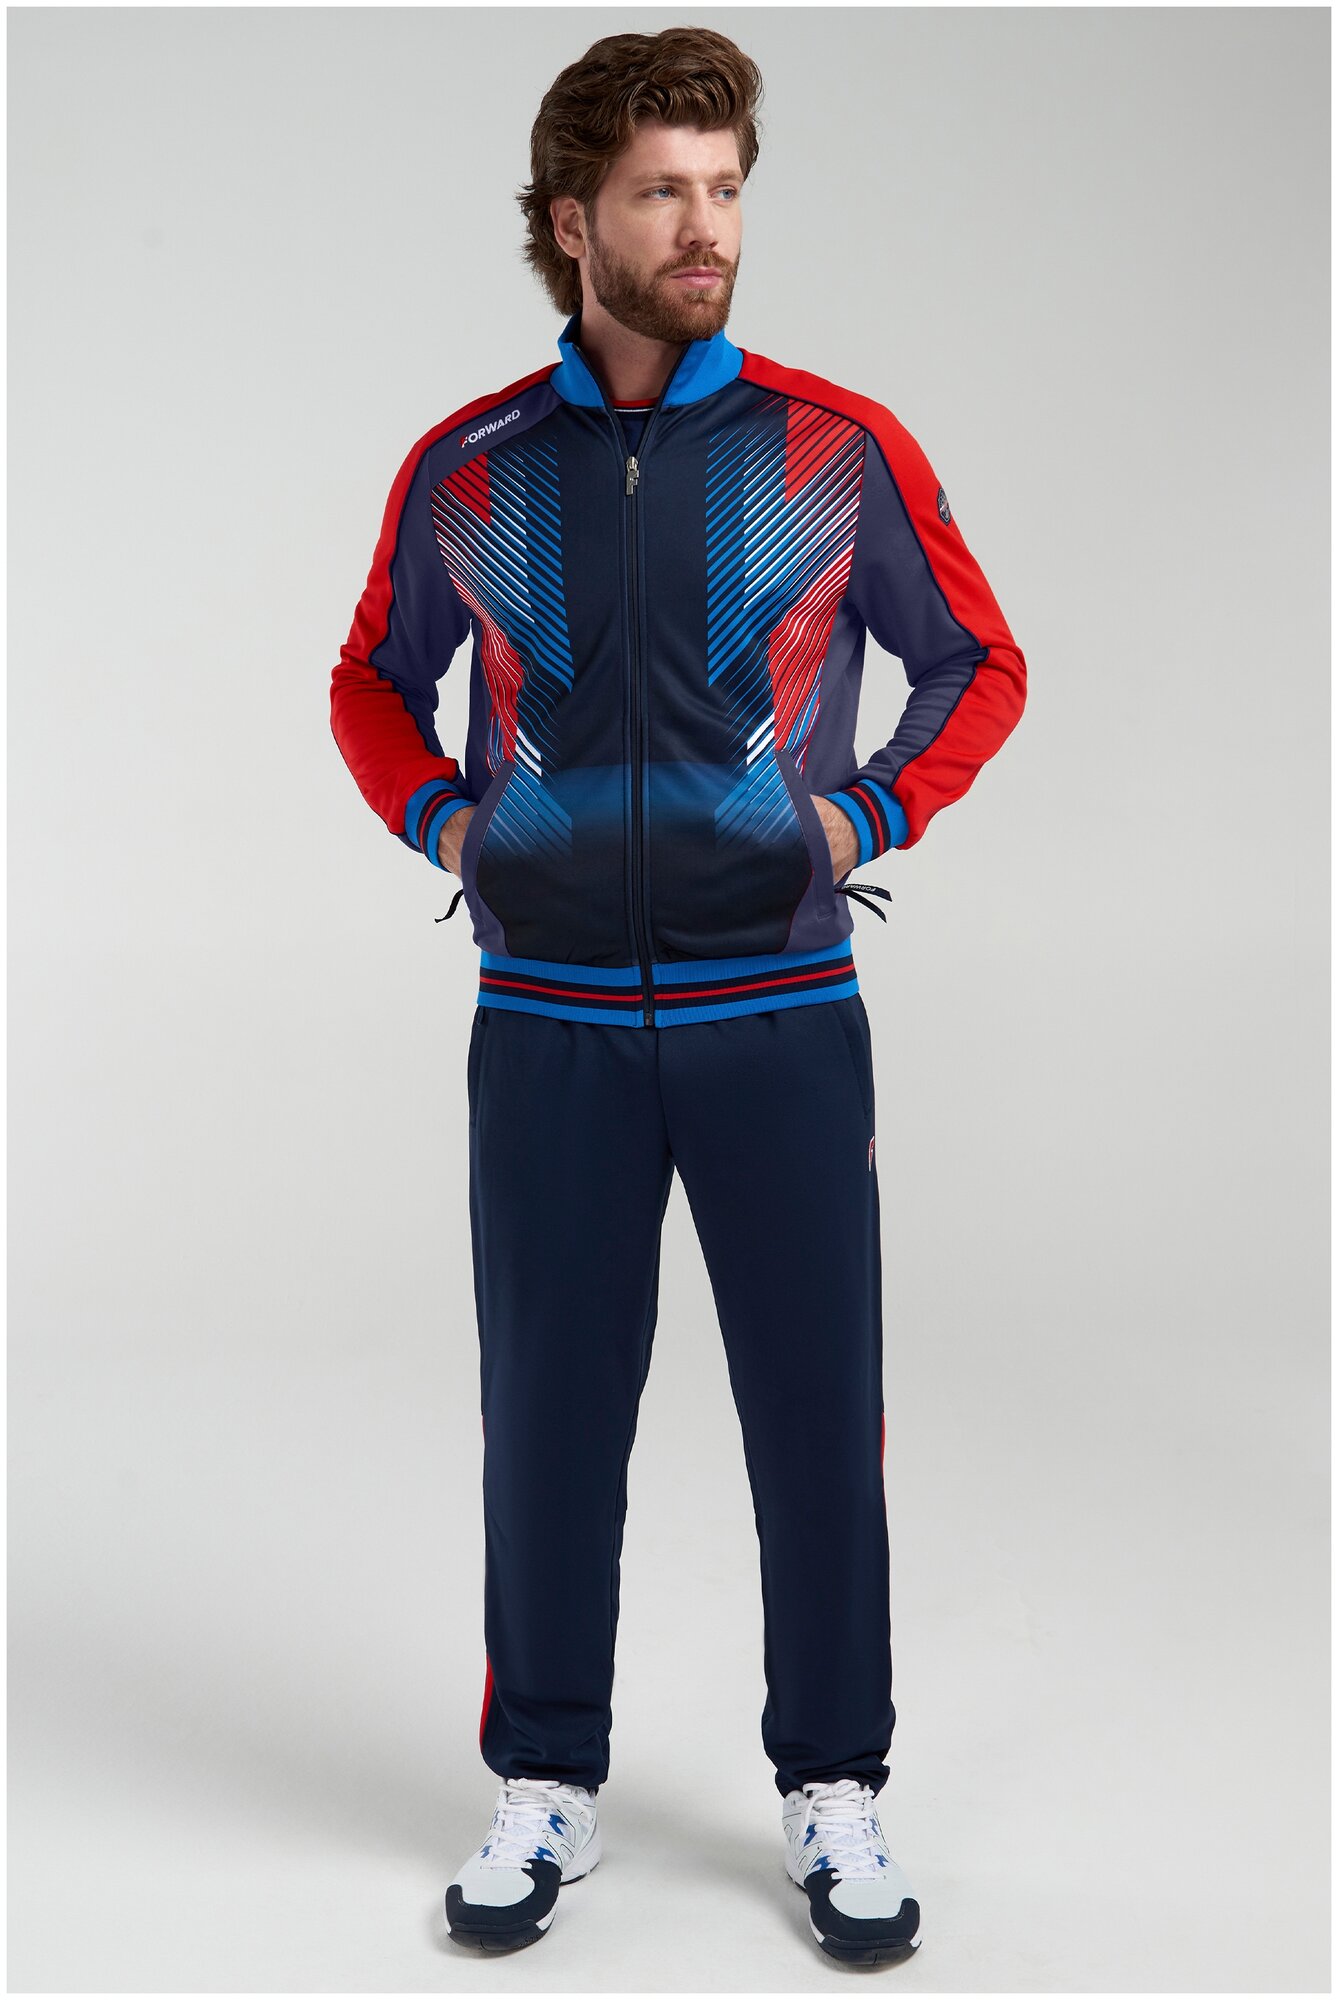 Костюм FORWARD, олимпийка и брюки, силуэт прямой, карманы, подкладка, размер XL, синий, красный — купить в интернет-магазине по низкой цене на Яндекс Маркете